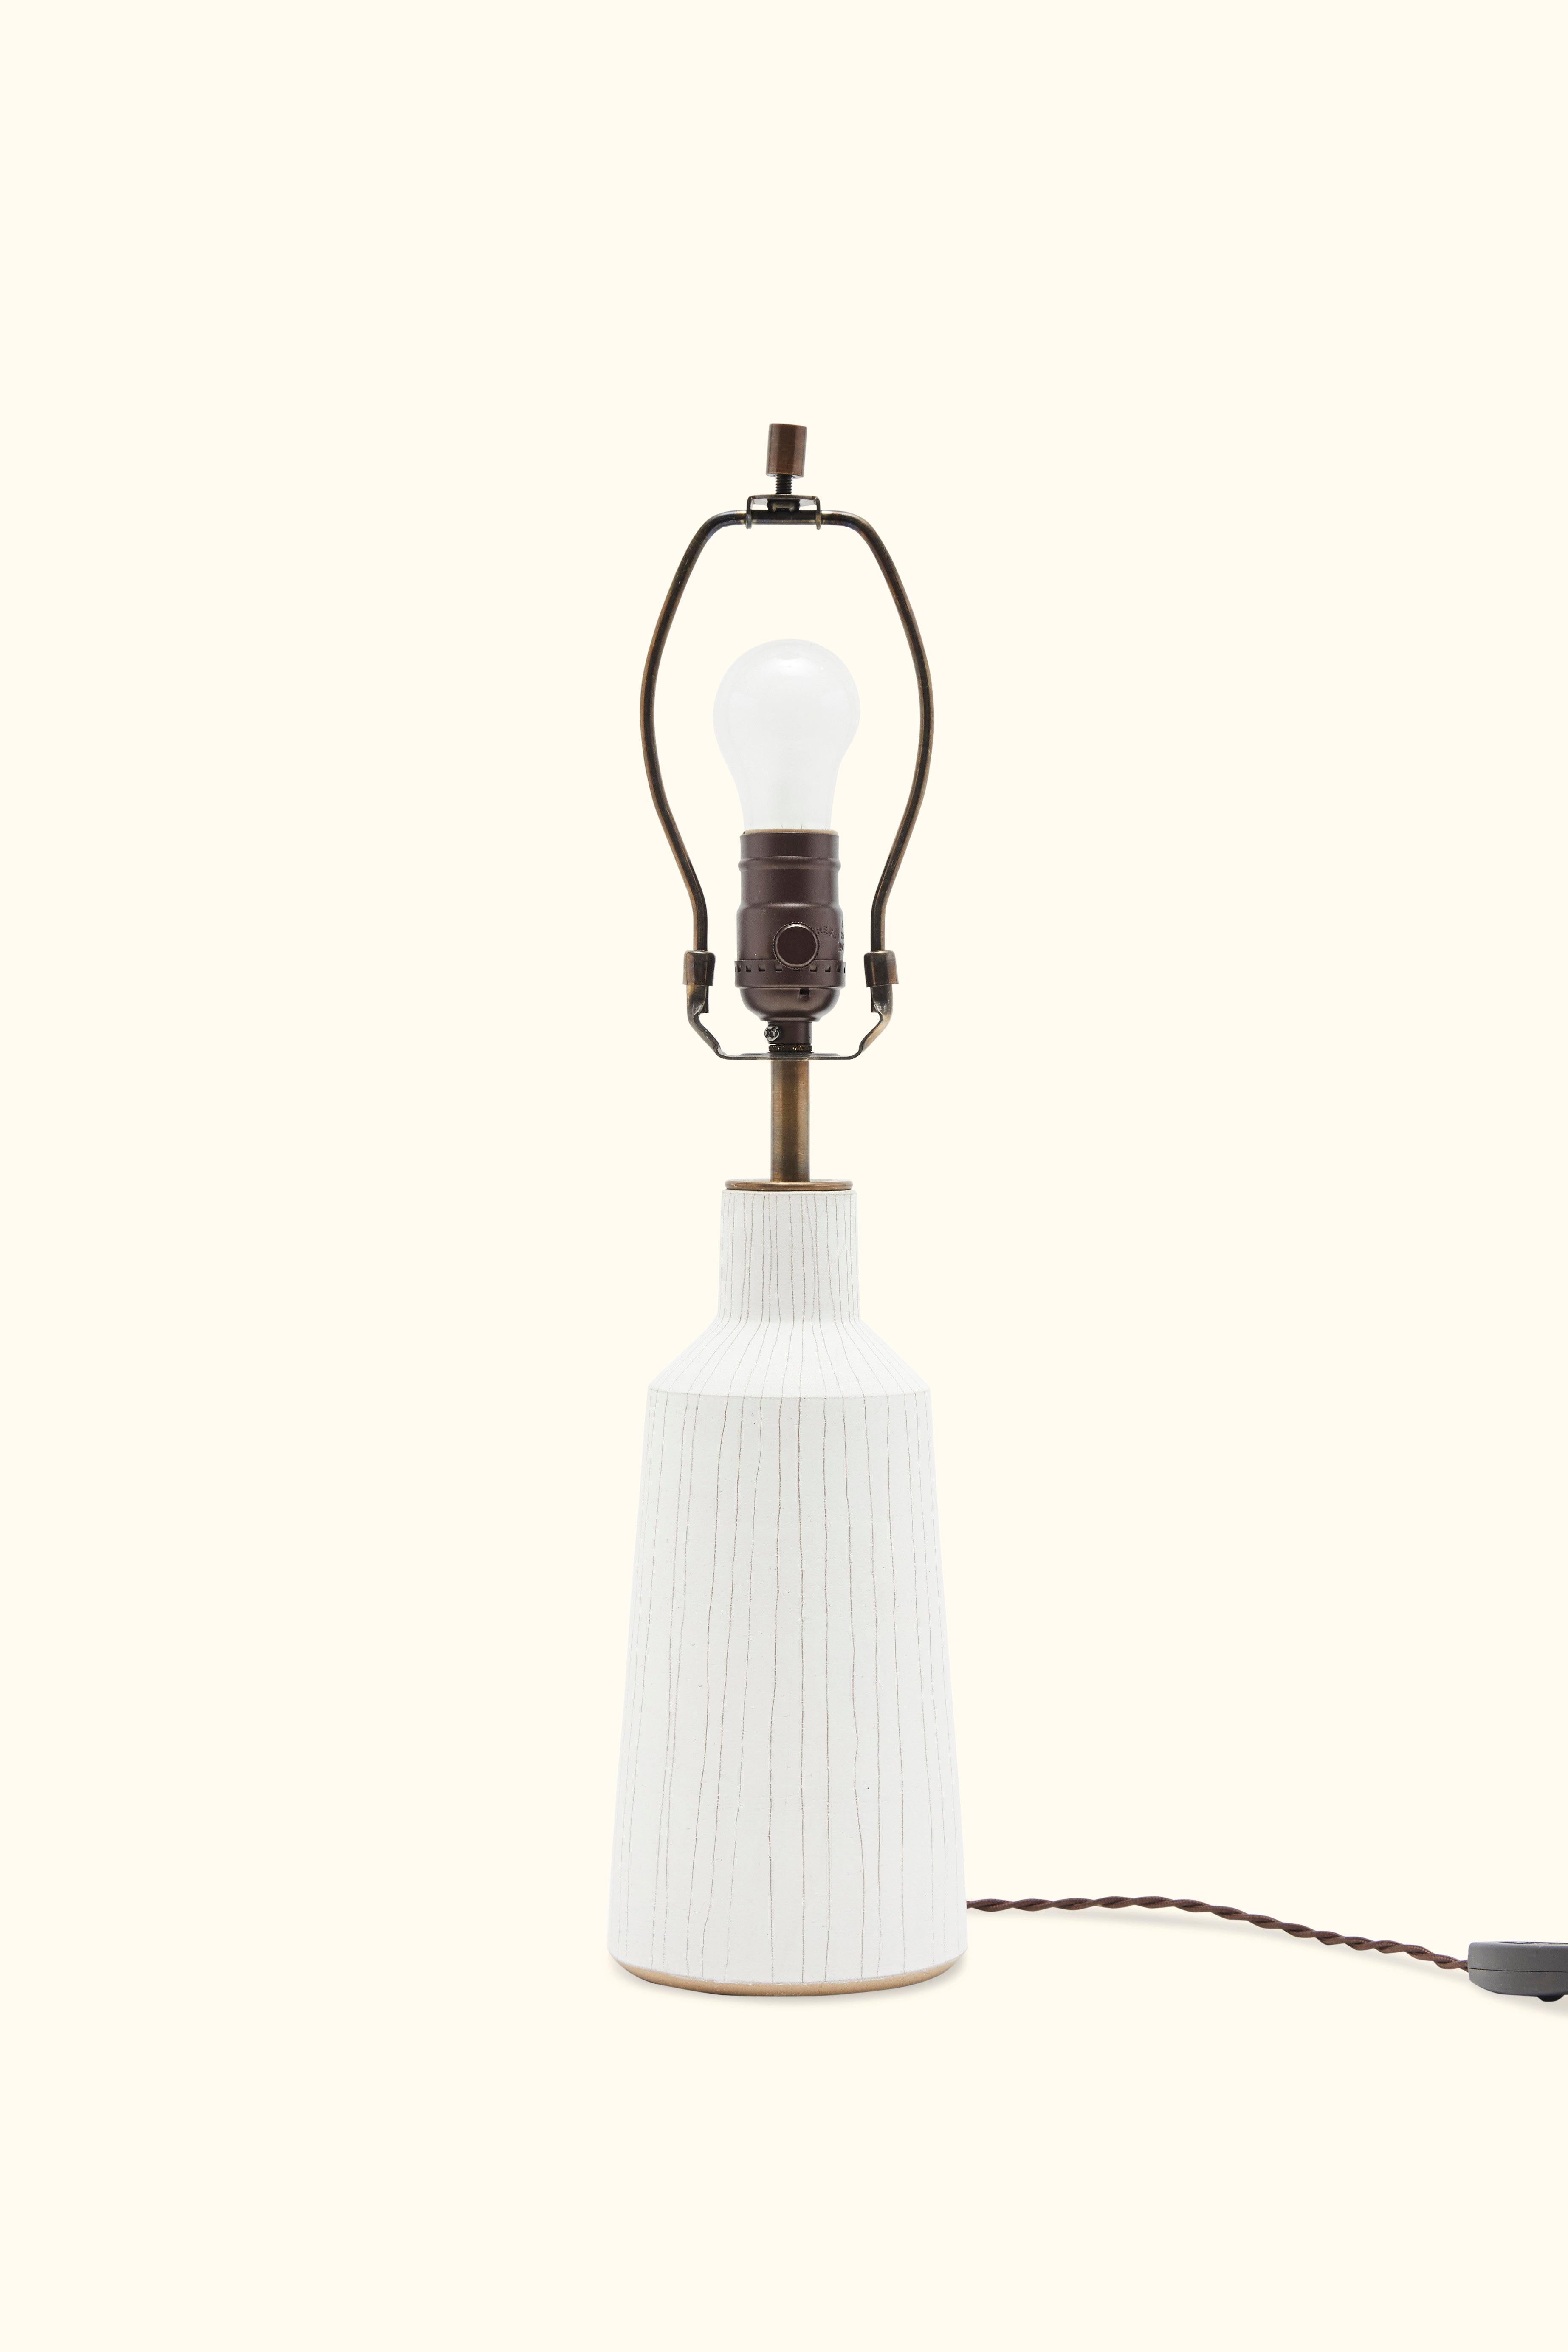 White striped Delos Lamp by ceramic artist Victoria Morris.